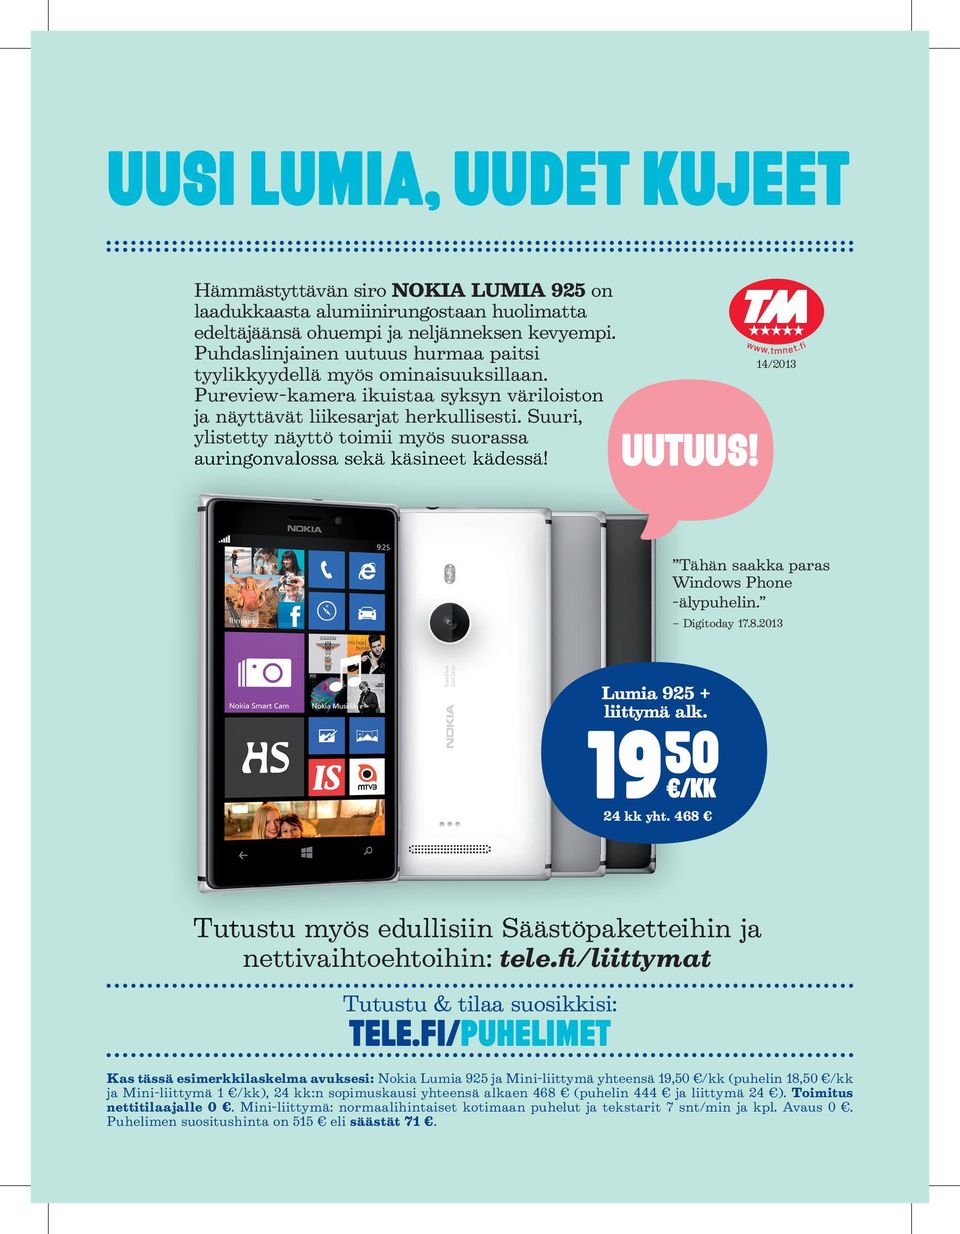 Suuri, ylistetty näyttö toimii myös suorassa auringonvalossa sekä käsineet kädessä! Uutuus! www.tmnet.fi 14/2013 Tähän saakka paras Windows Phone -älypuhelin. Digitoday 17.8.